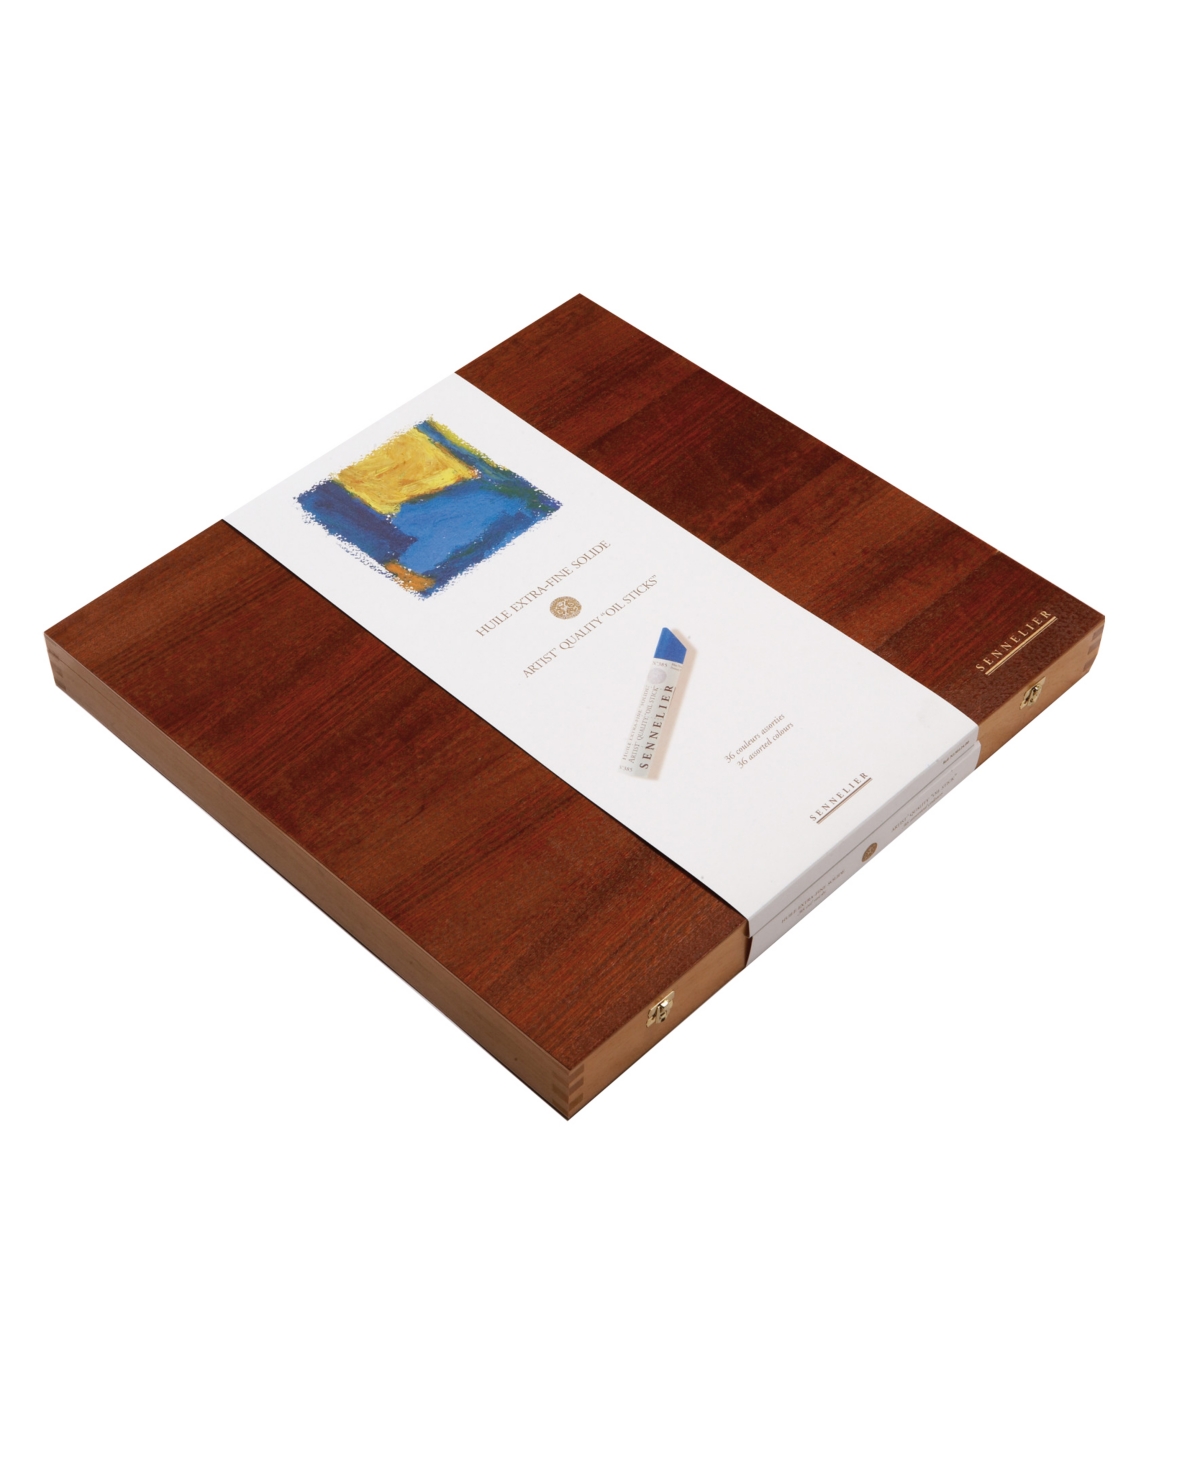 Medium Oil Stick Wooden Box 36 Piece Color Set - Multi